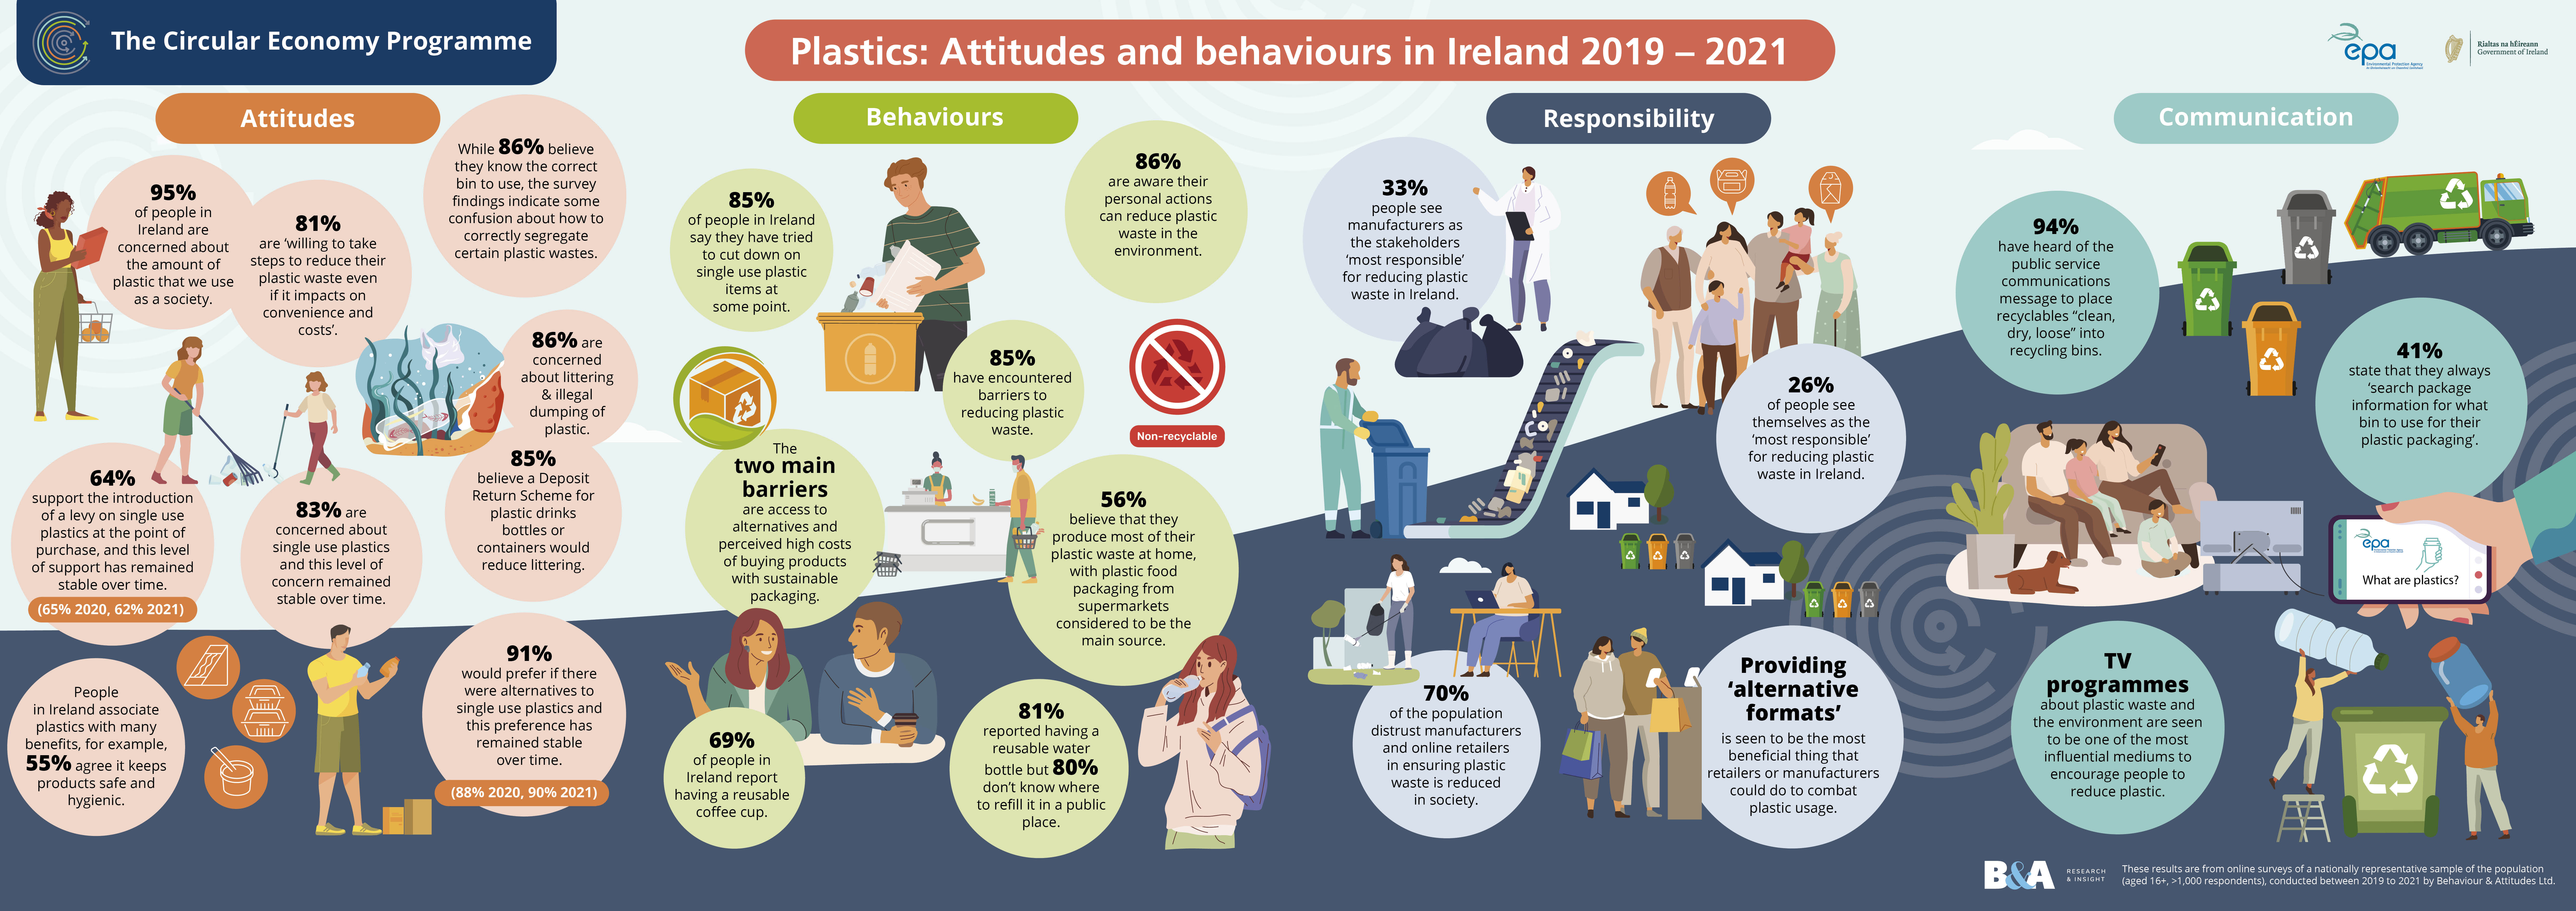 Plastics attitudes and behaviours infographic2